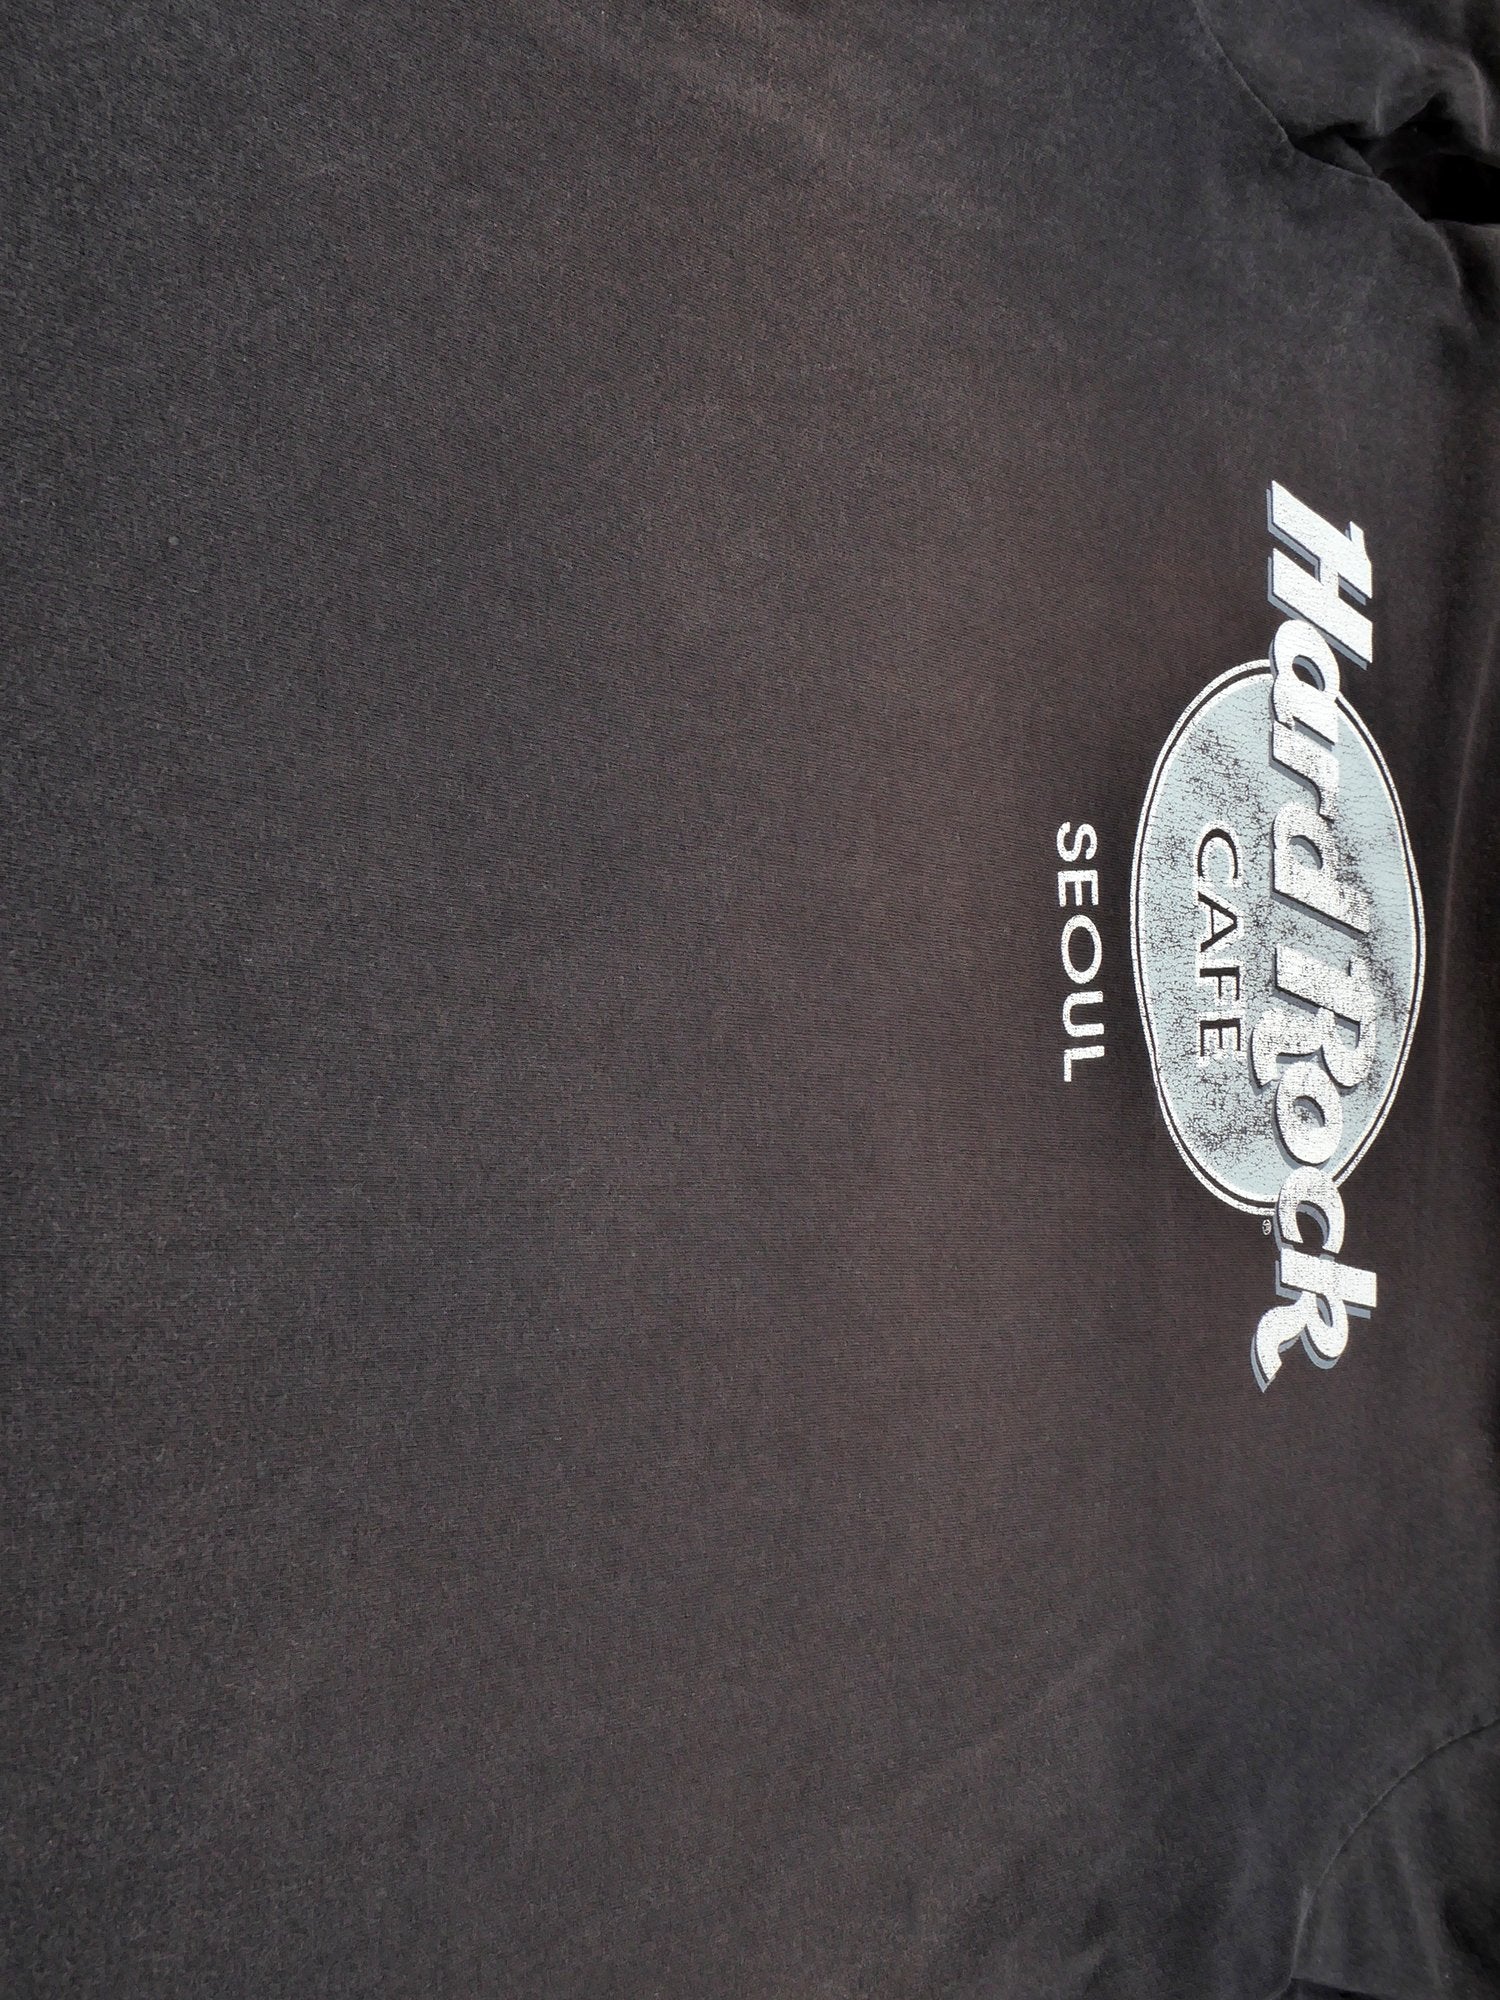 Hard Rock Cafe schwarz T-Shirt - Peeces